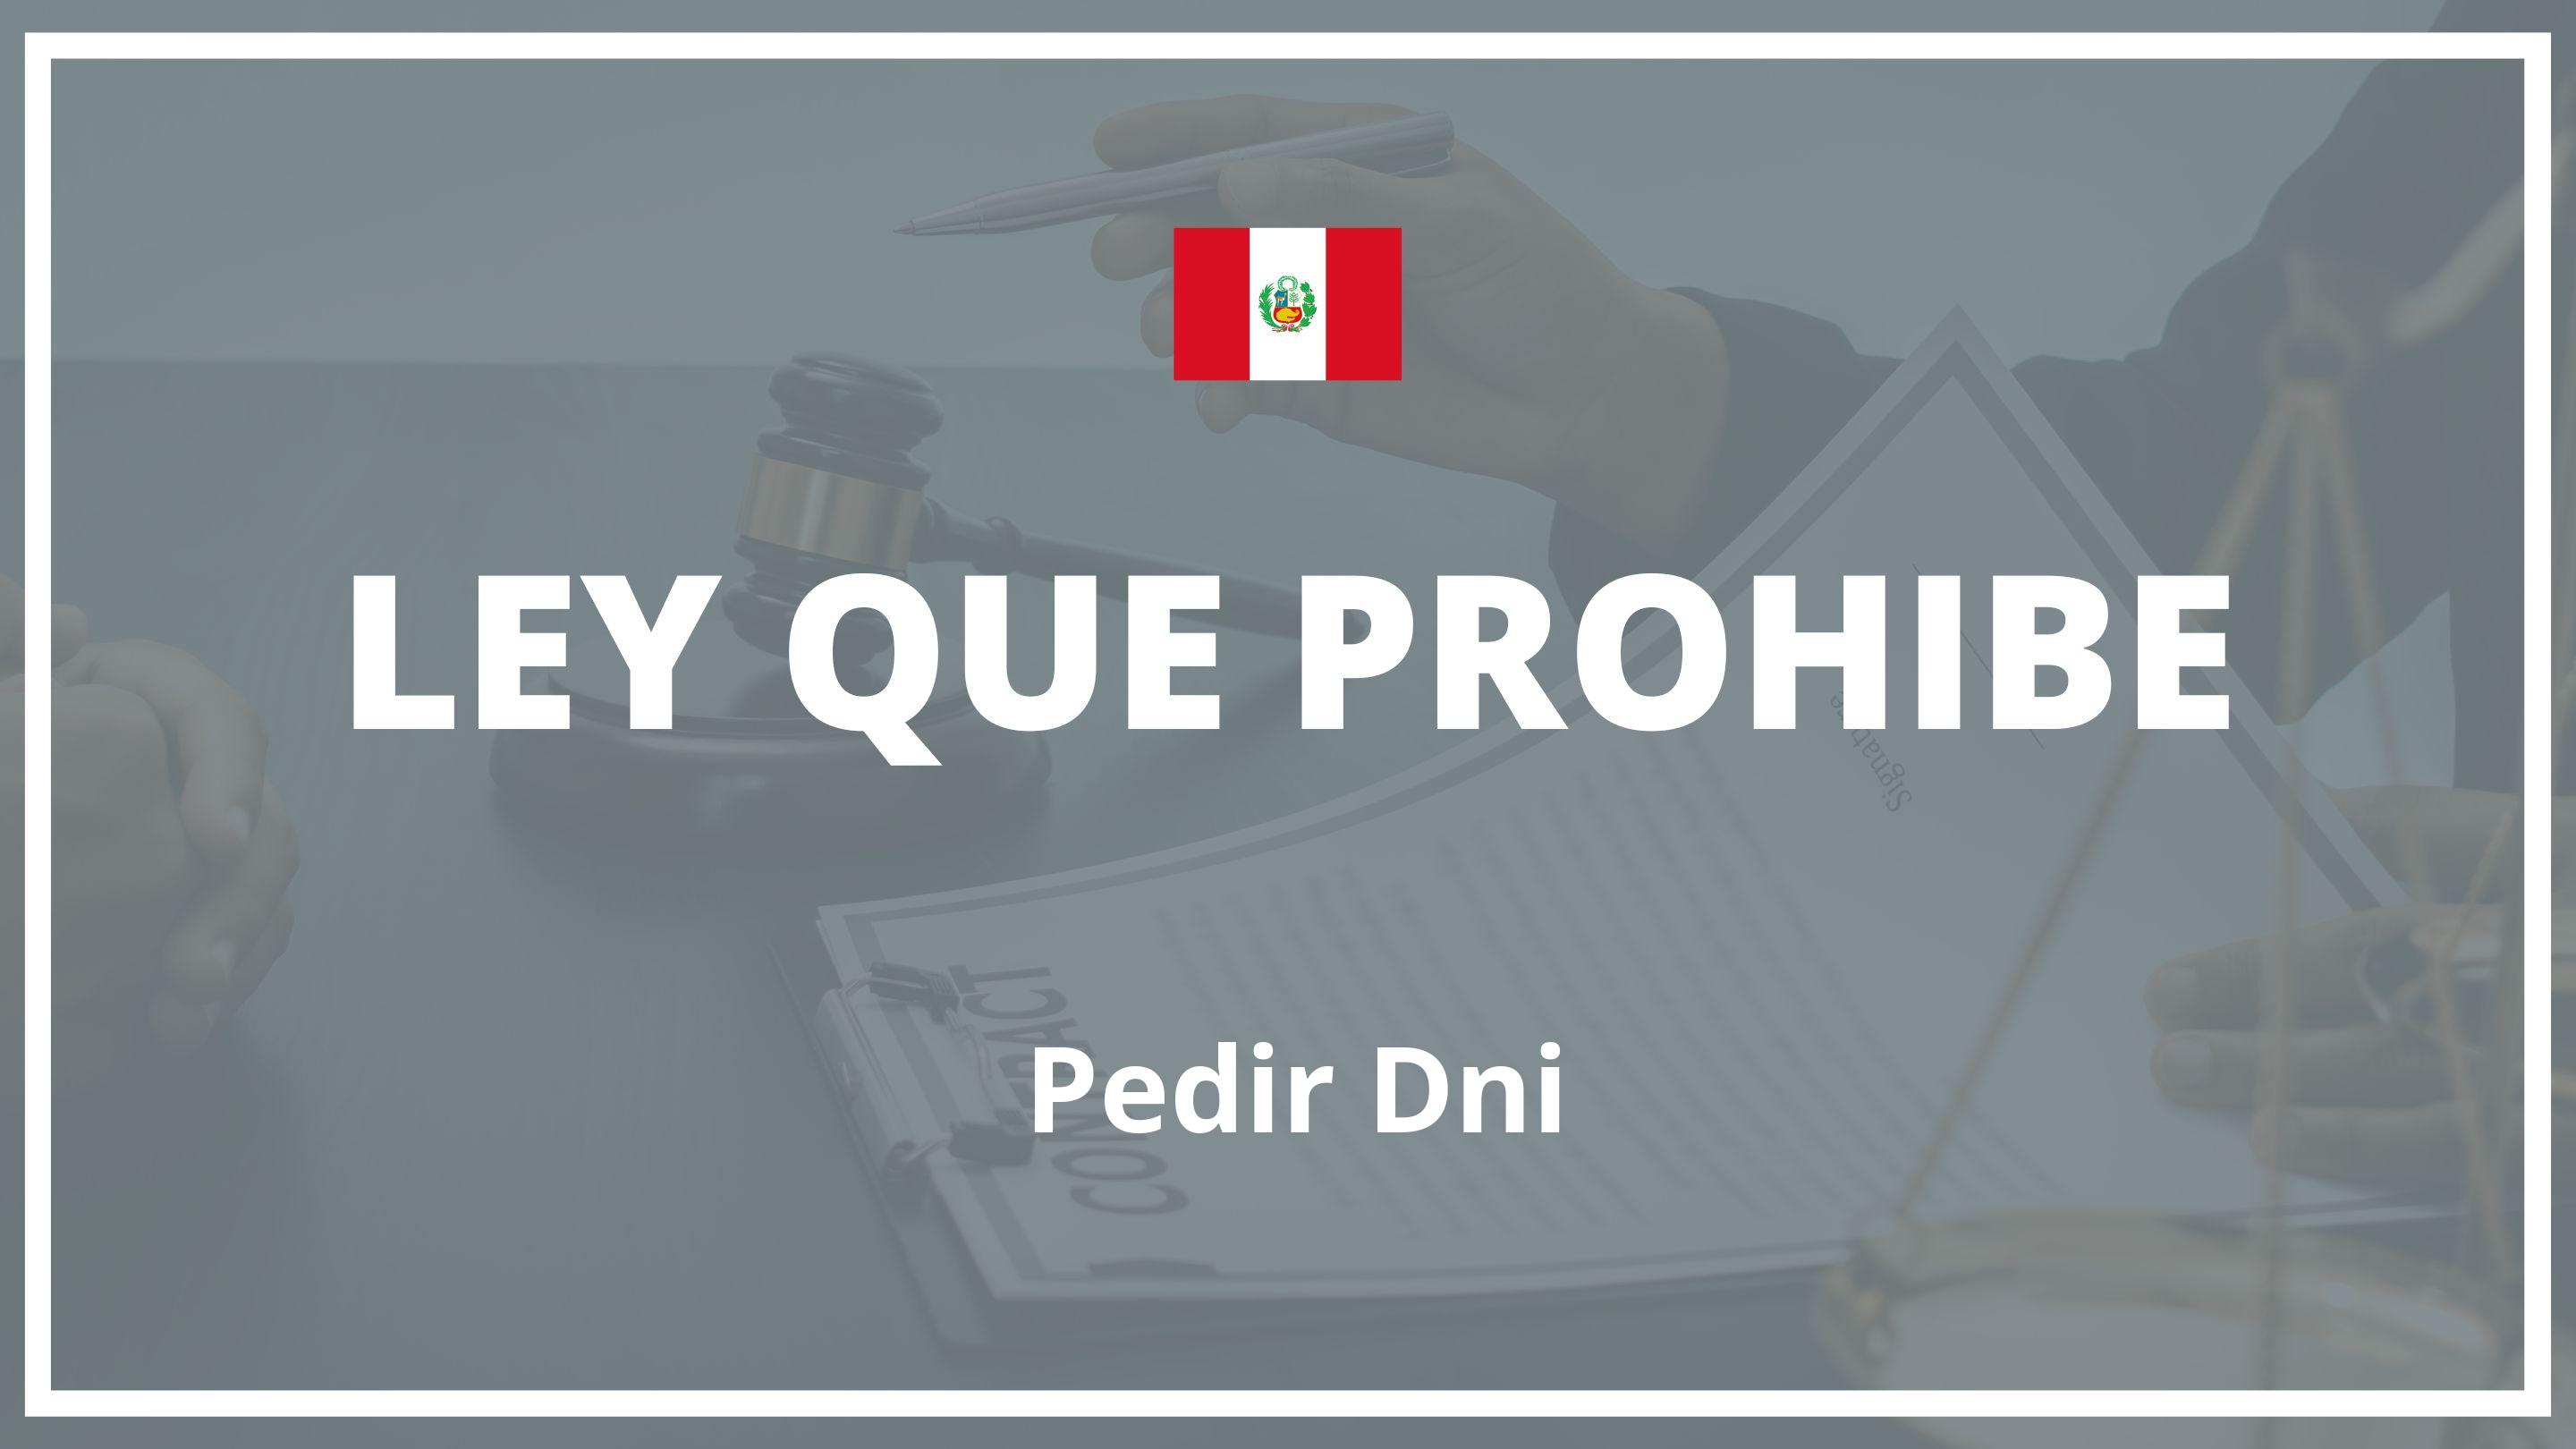 Ley que prohibe pedir dni Peru